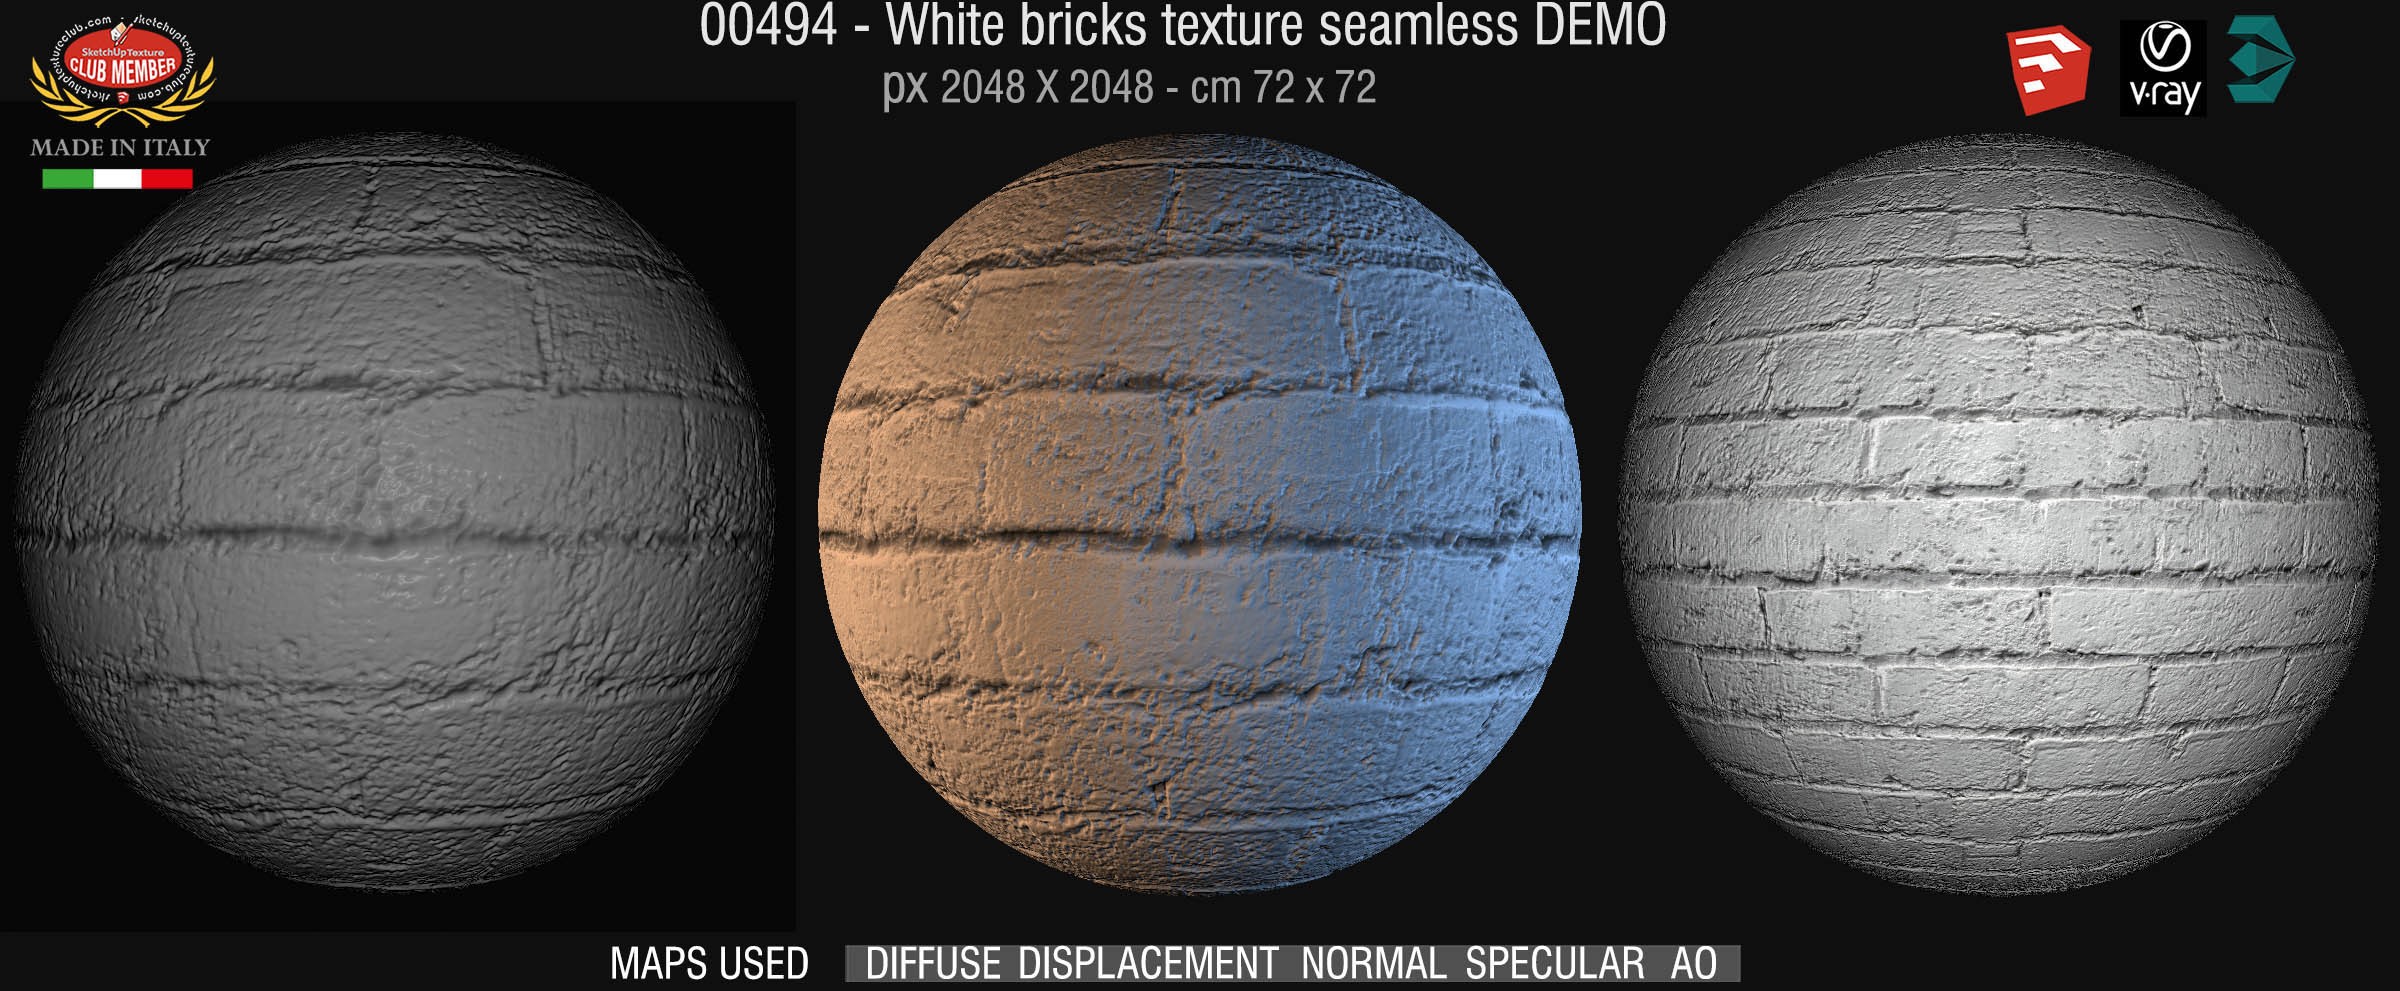 00494 White bricks texture seamless + maps DEMO